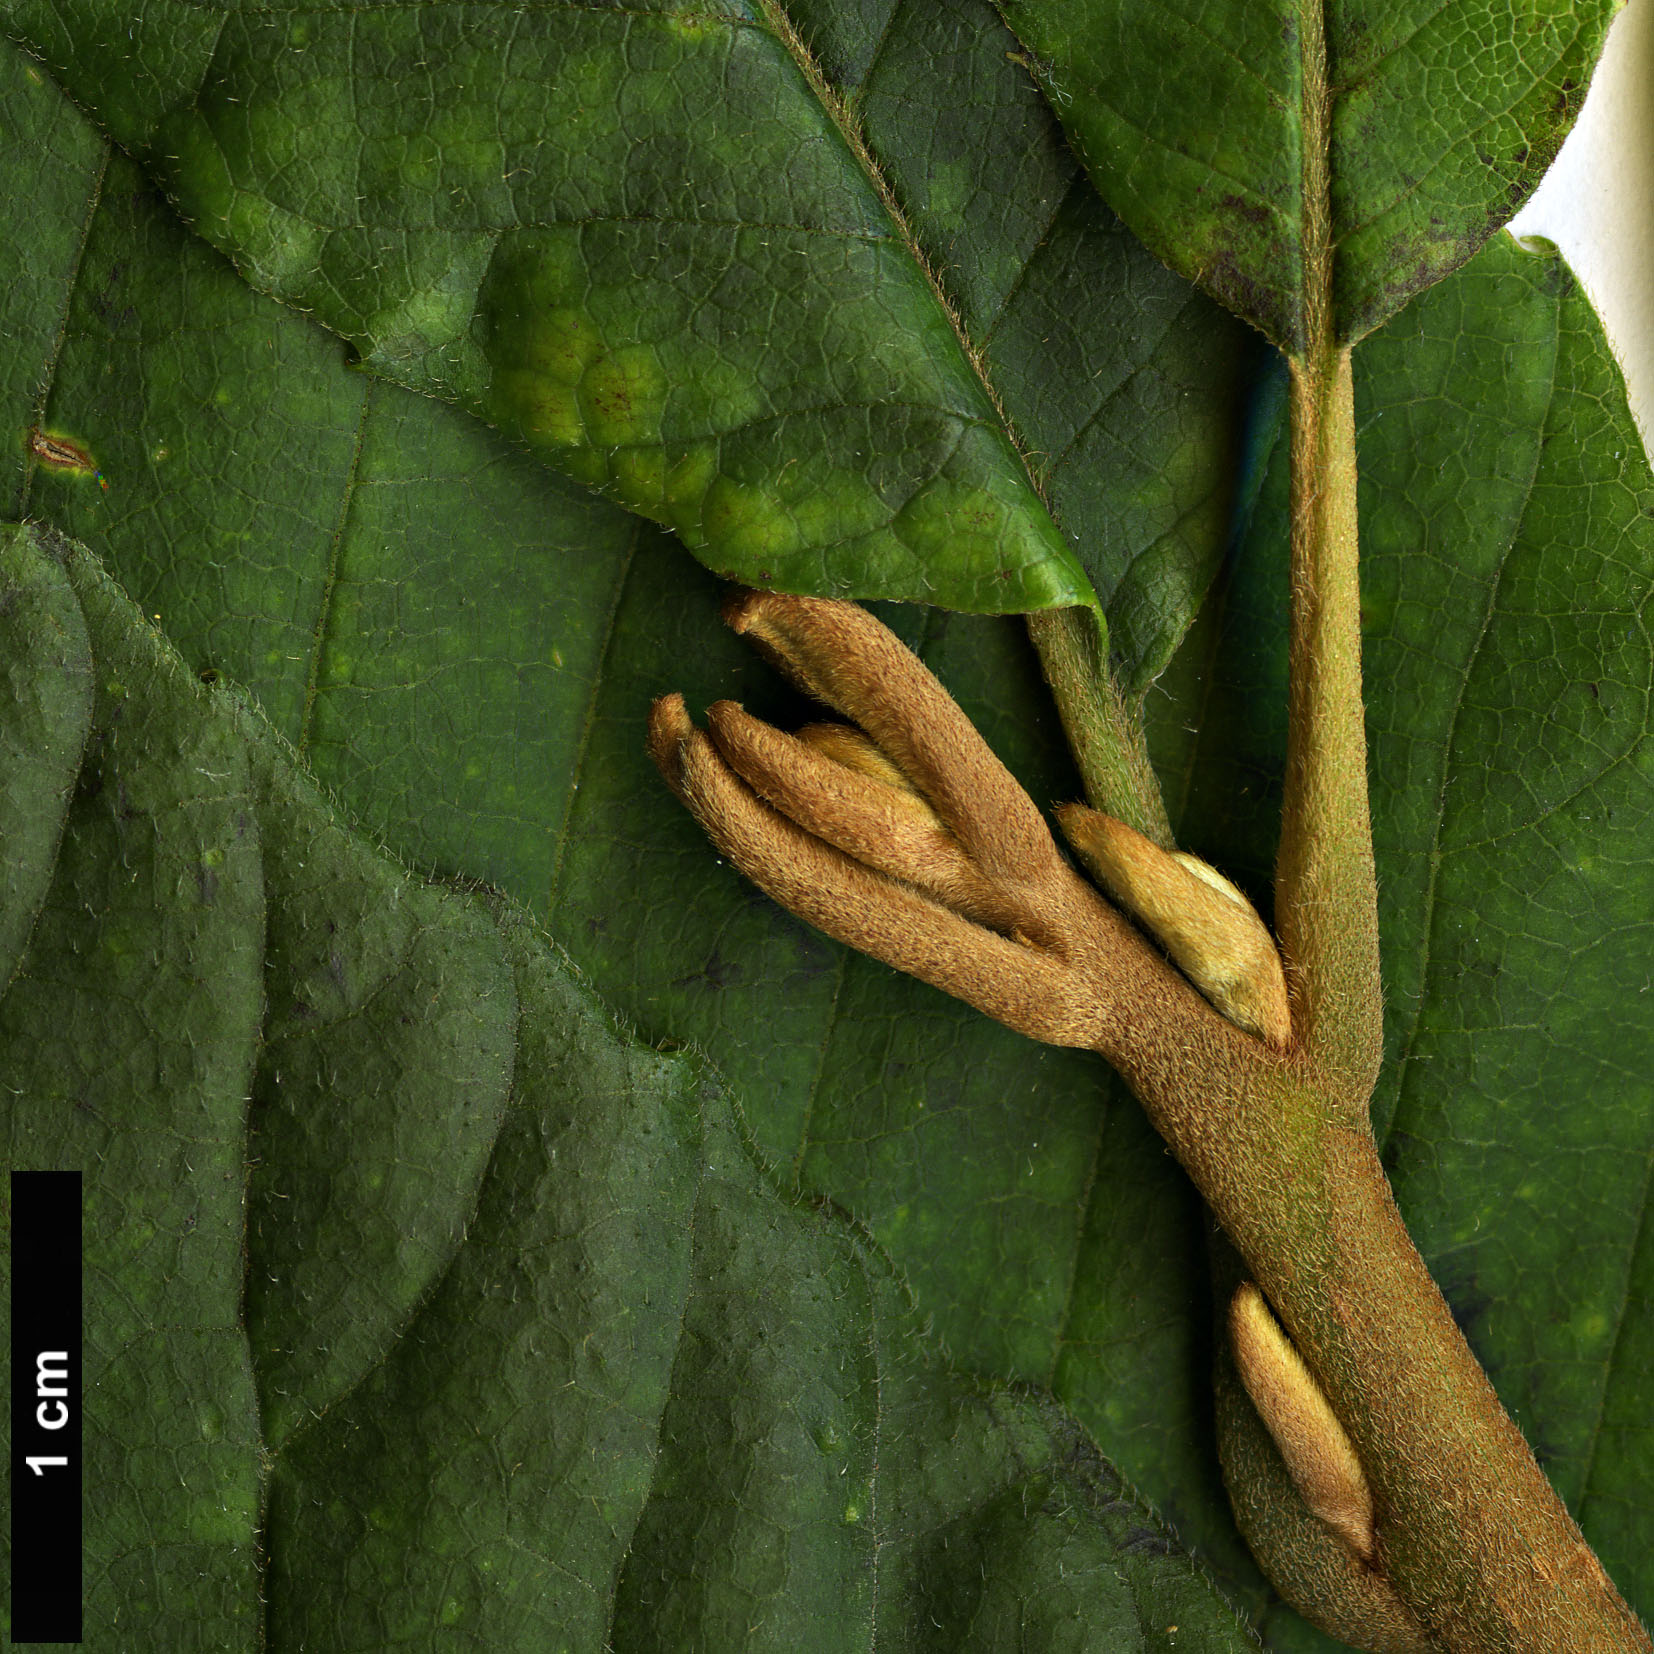 High resolution image: Family: Sabiaceae - Genus: Meliosma - Taxon: myriantha